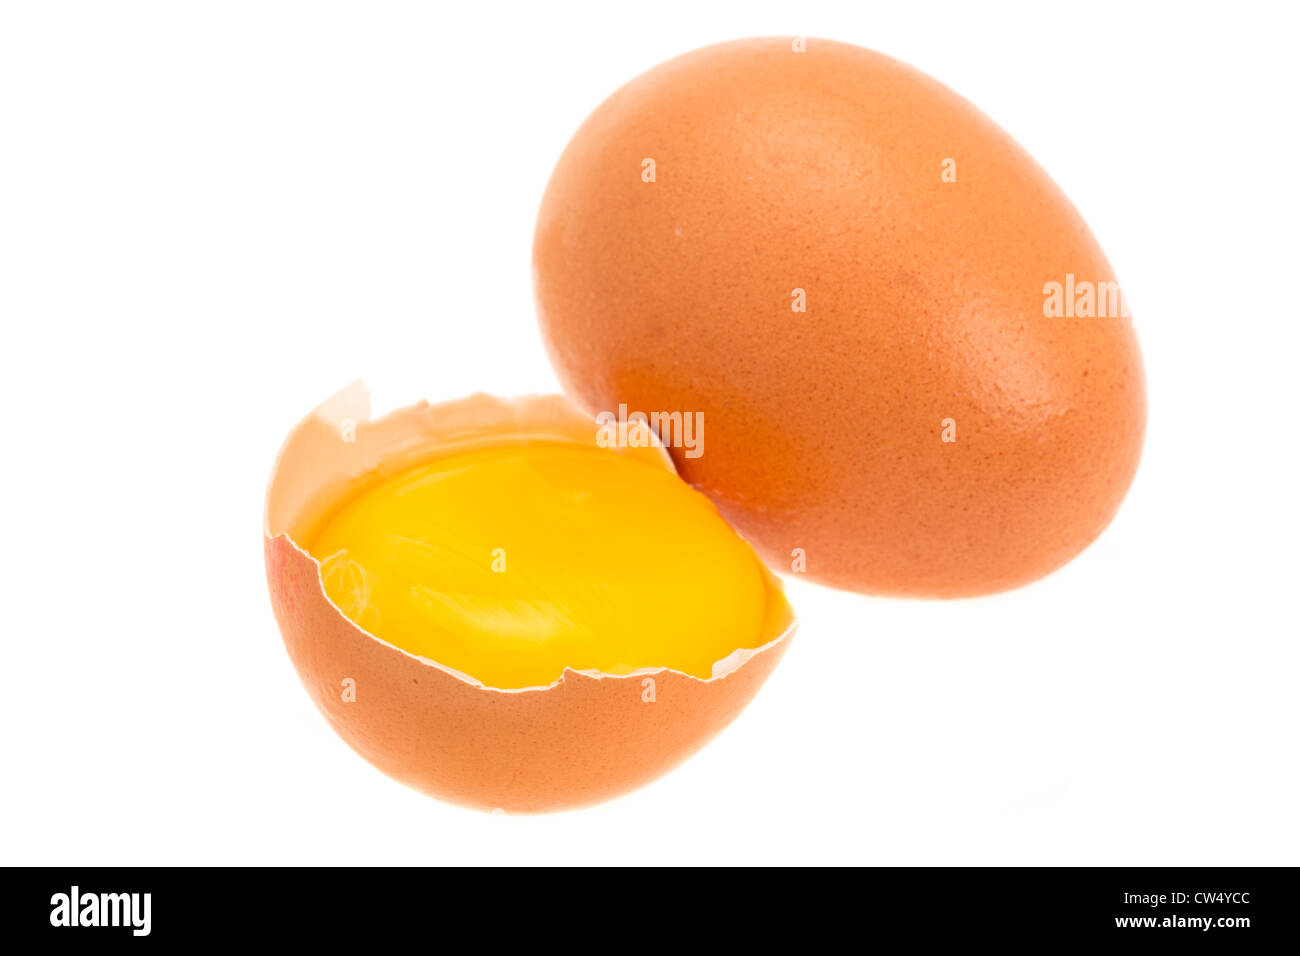 Uova fresche con un uovo crepe aperte per mostrare il tuorlo - studio shot con uno sfondo bianco Foto Stock